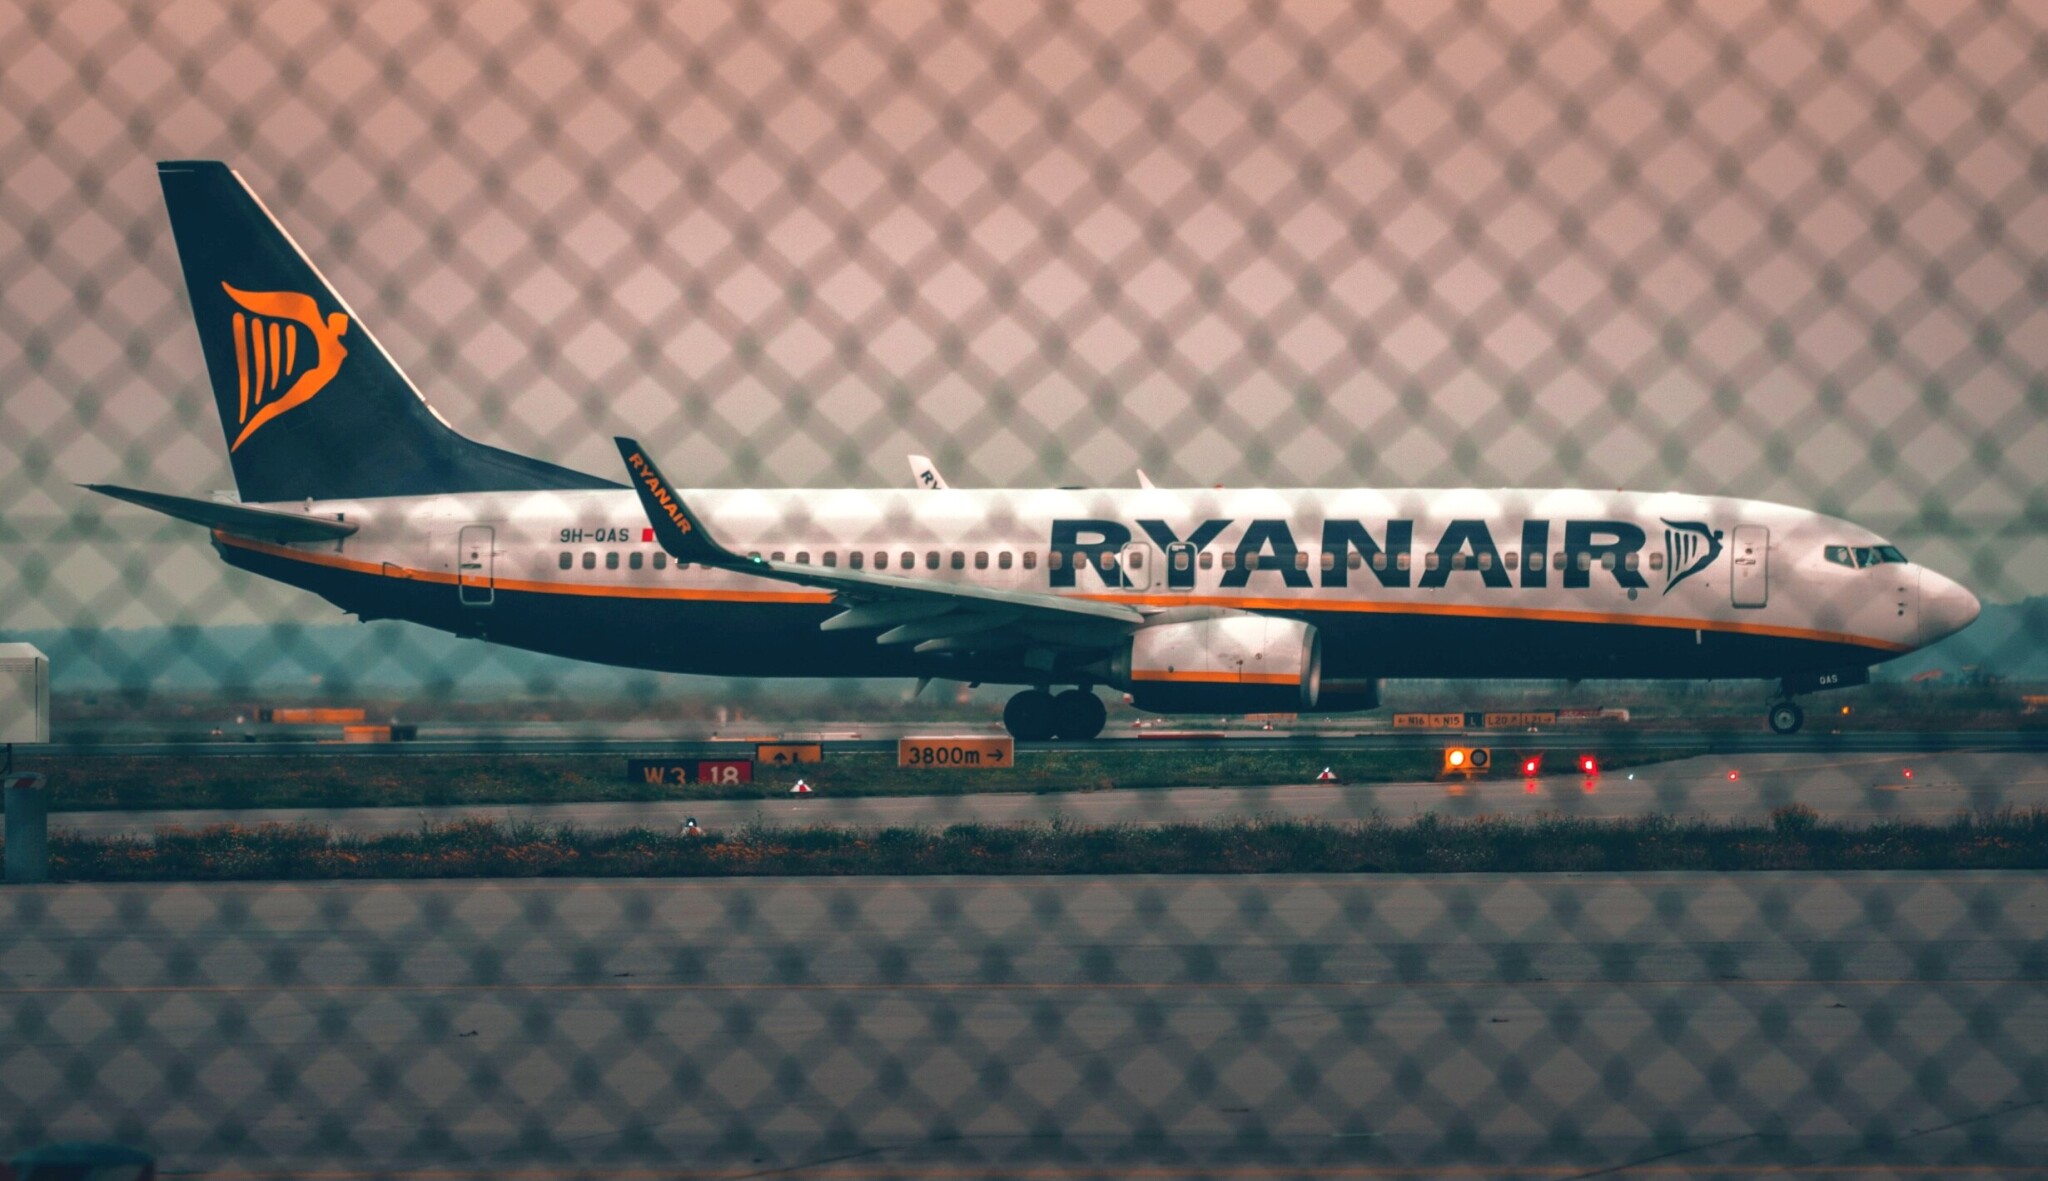 Ryanairu klesla vytíženost letadel. Firma vede spor s prodejci letenek